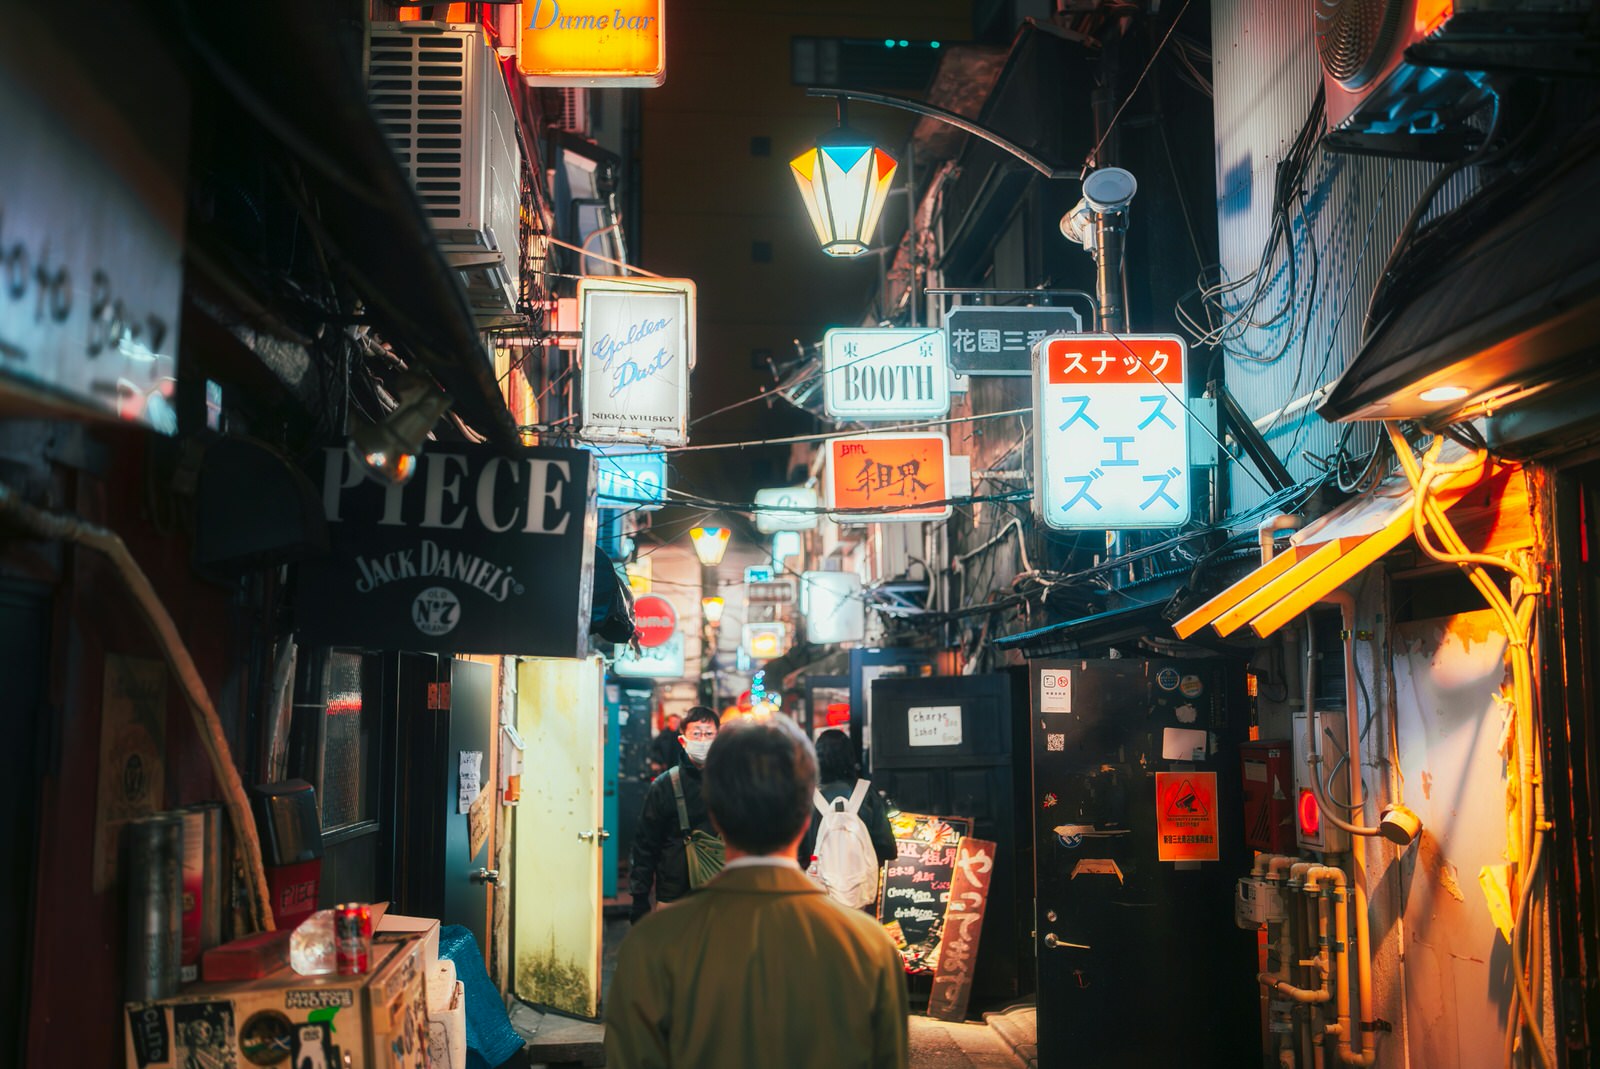 Un homme regarde une ruelle de Shinjuku avec des panneaux dans plusieurs langues.